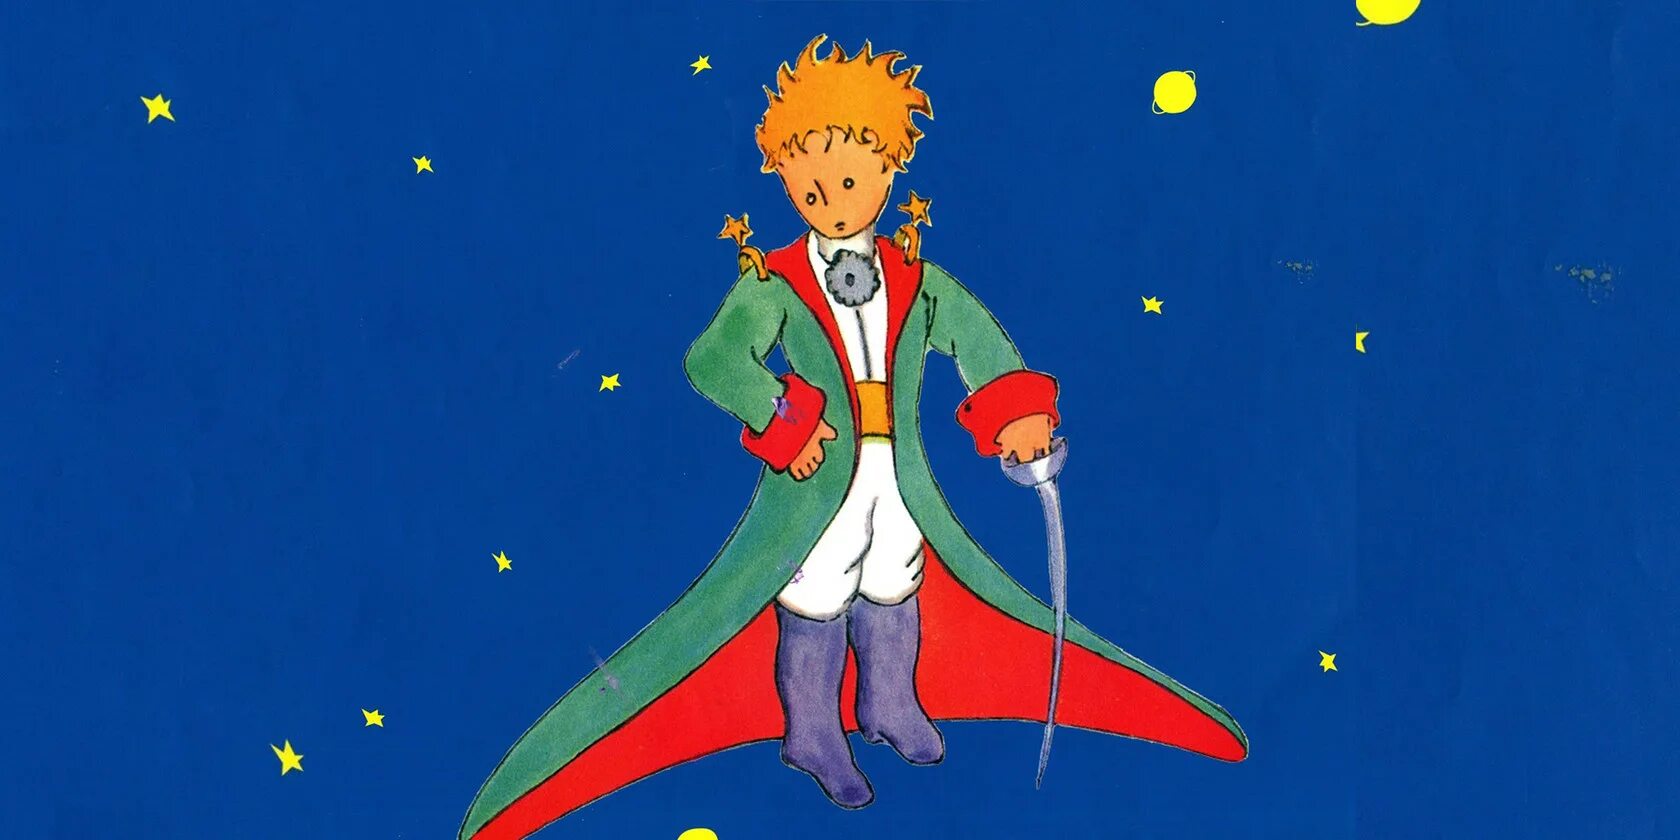 Маленький принц какой год. Иллюстрации к сказке маленький принц Экзюпери. Маленький принц Звездочет. Сказка маленький принц. Картинки к сказке маленький принц.